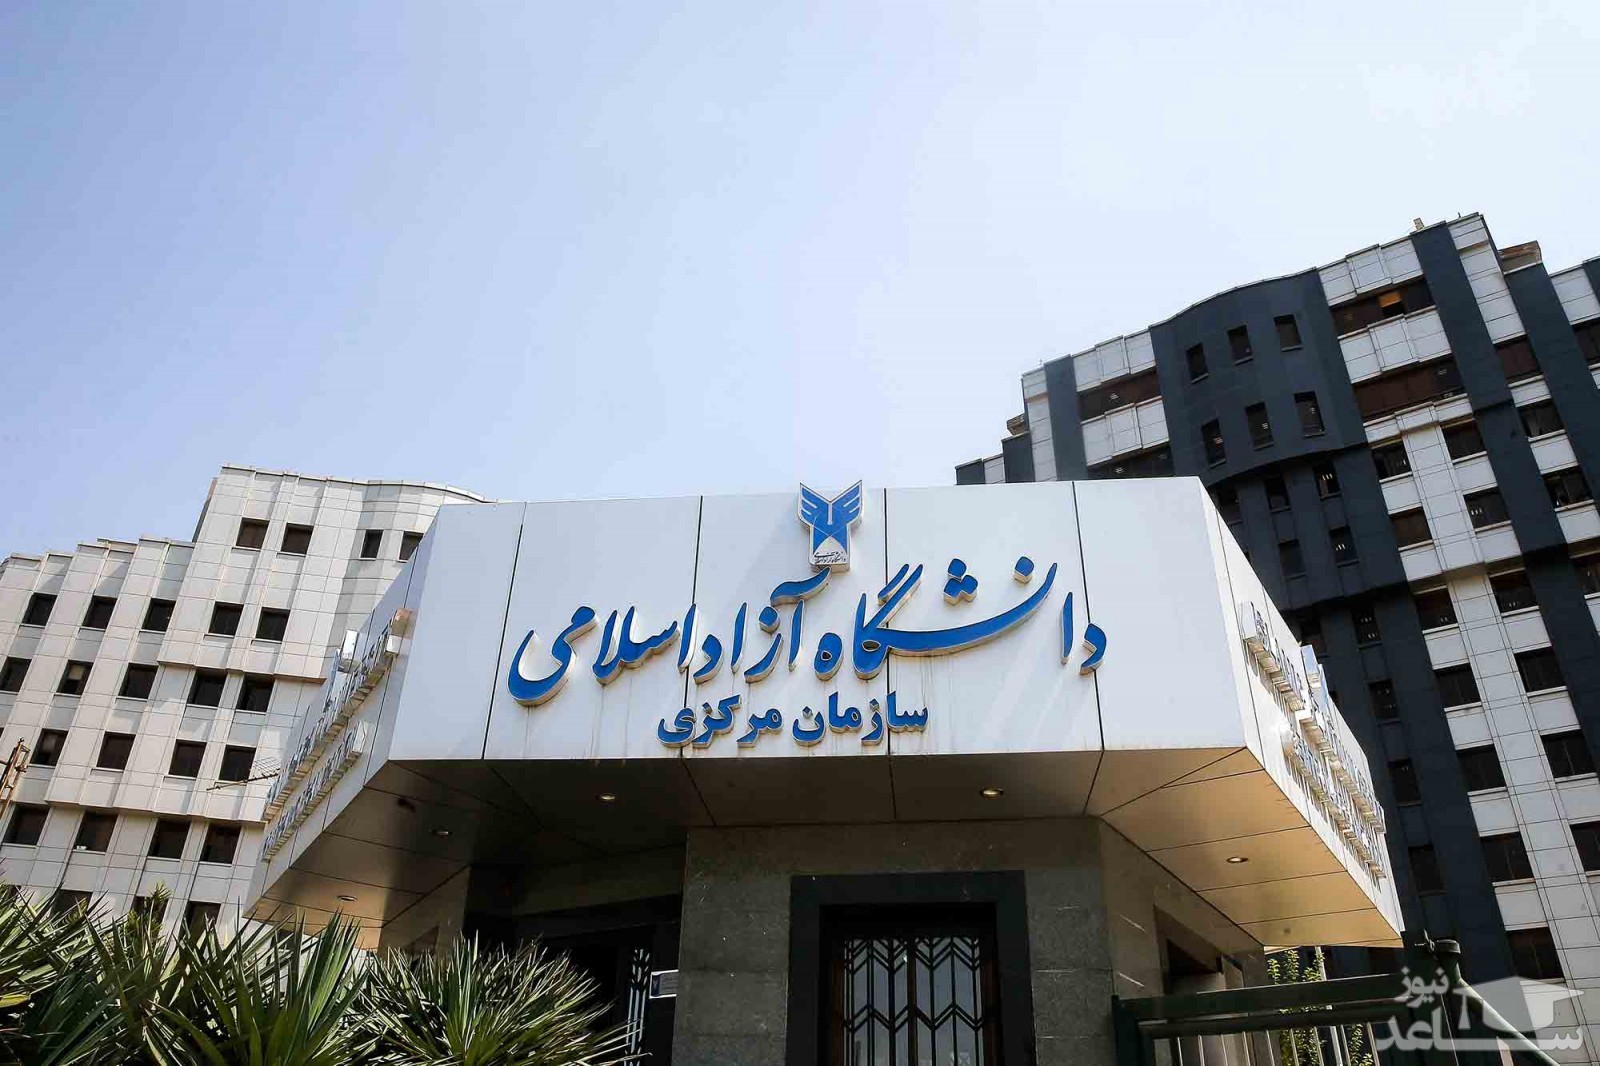 اولین تصاویر ورود فرد اسلحه به دست به دانشگاه آزاد در تهران